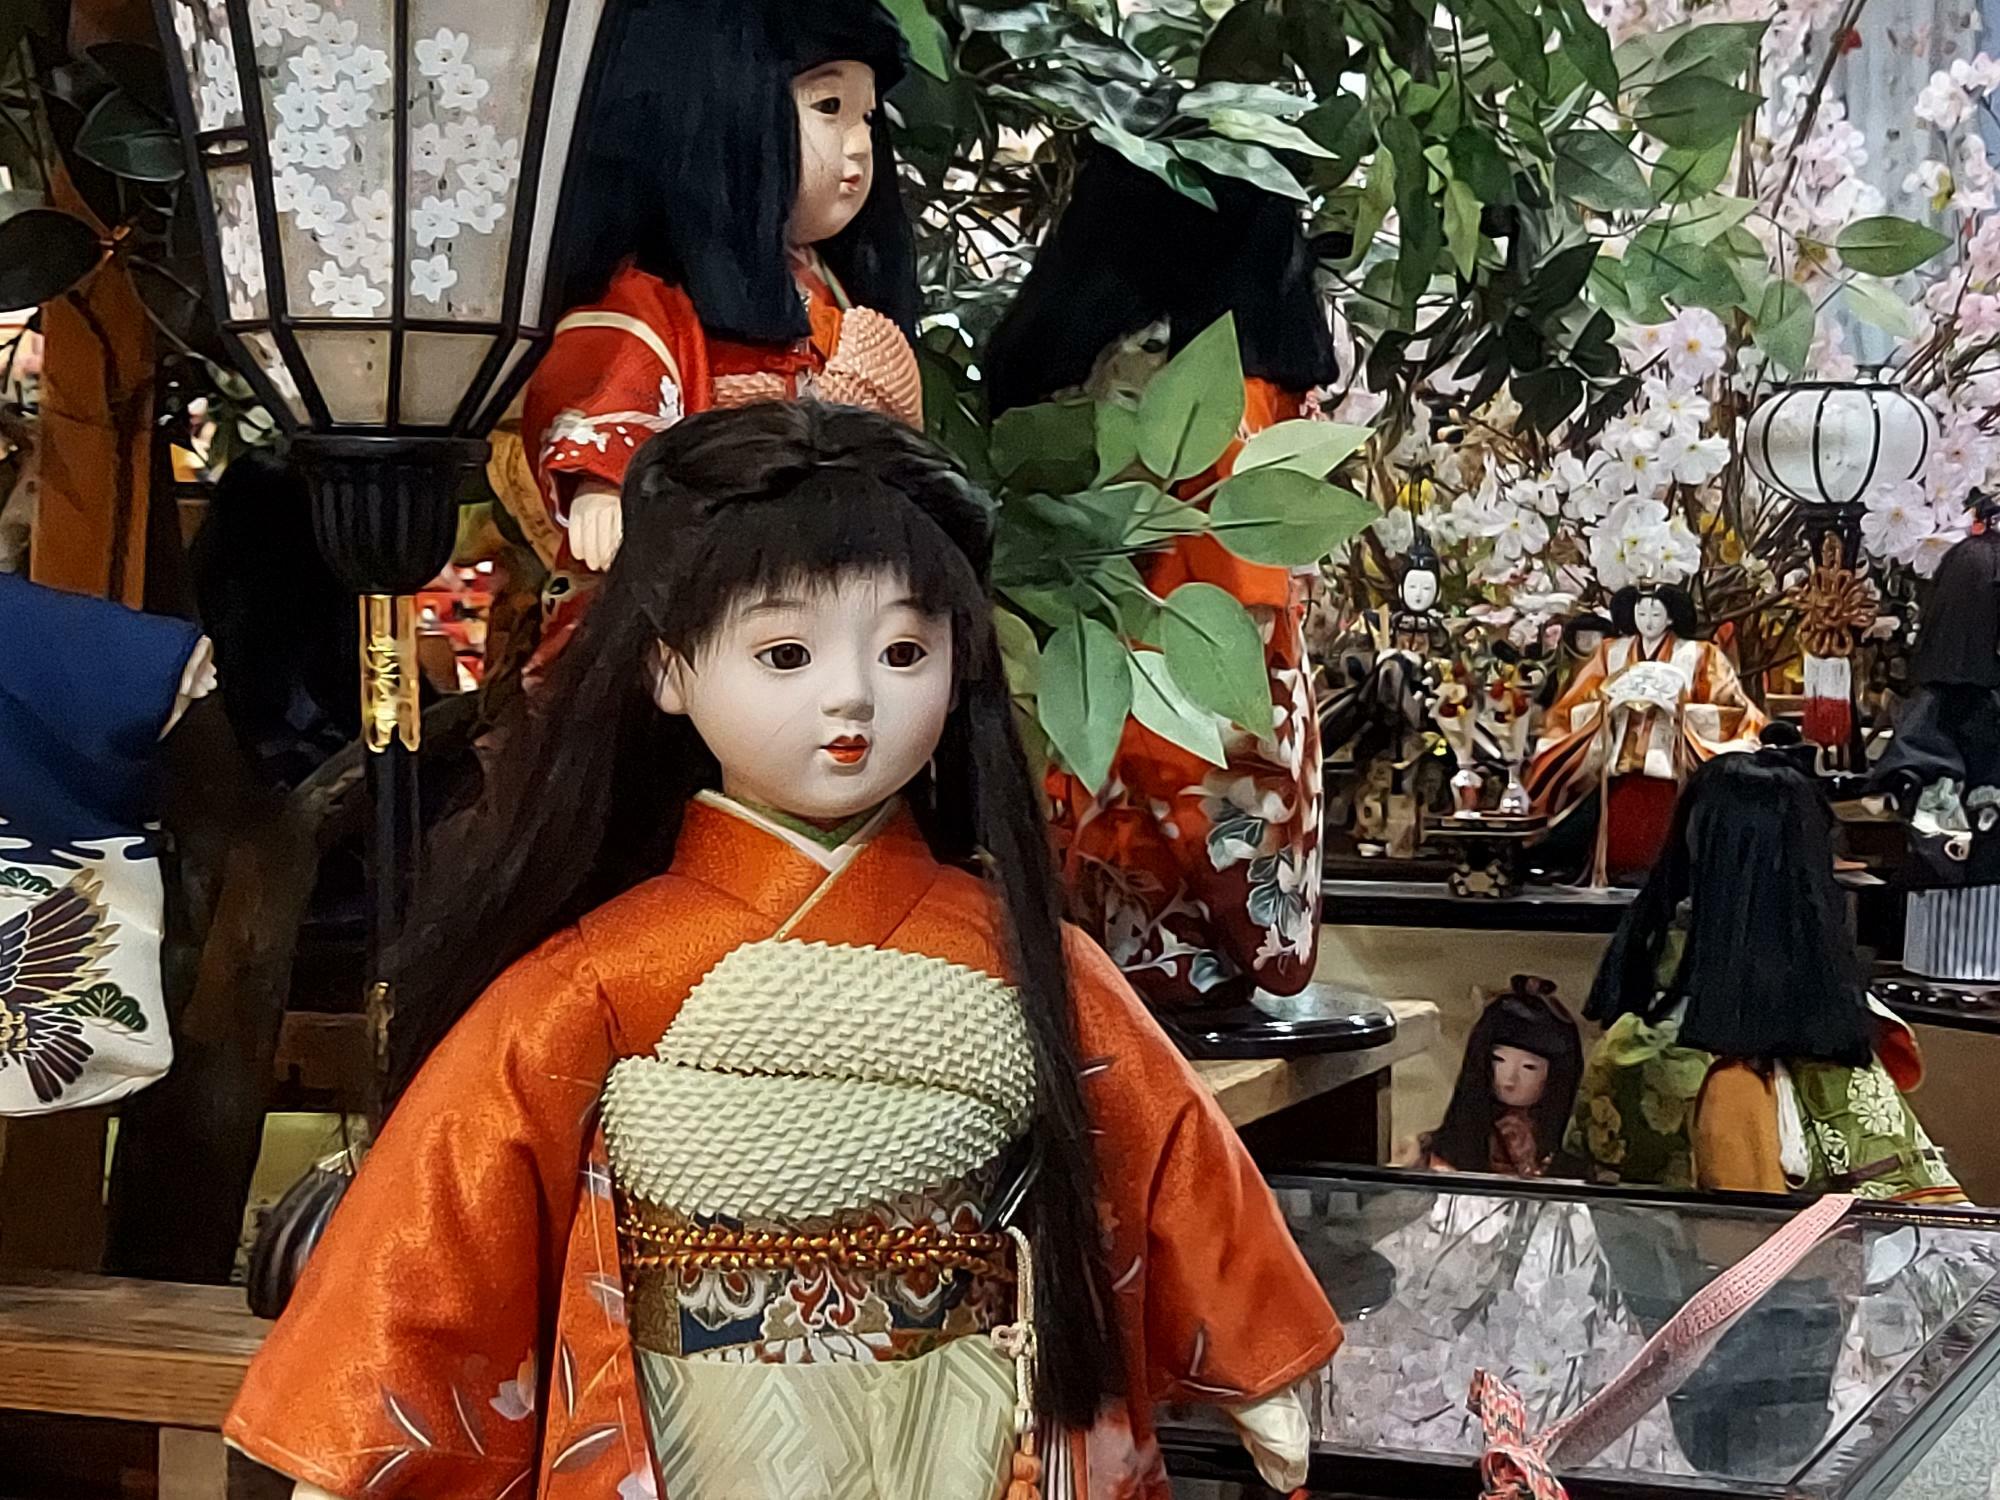 阿波勝浦元祖ビッグひな祭りのひな人形